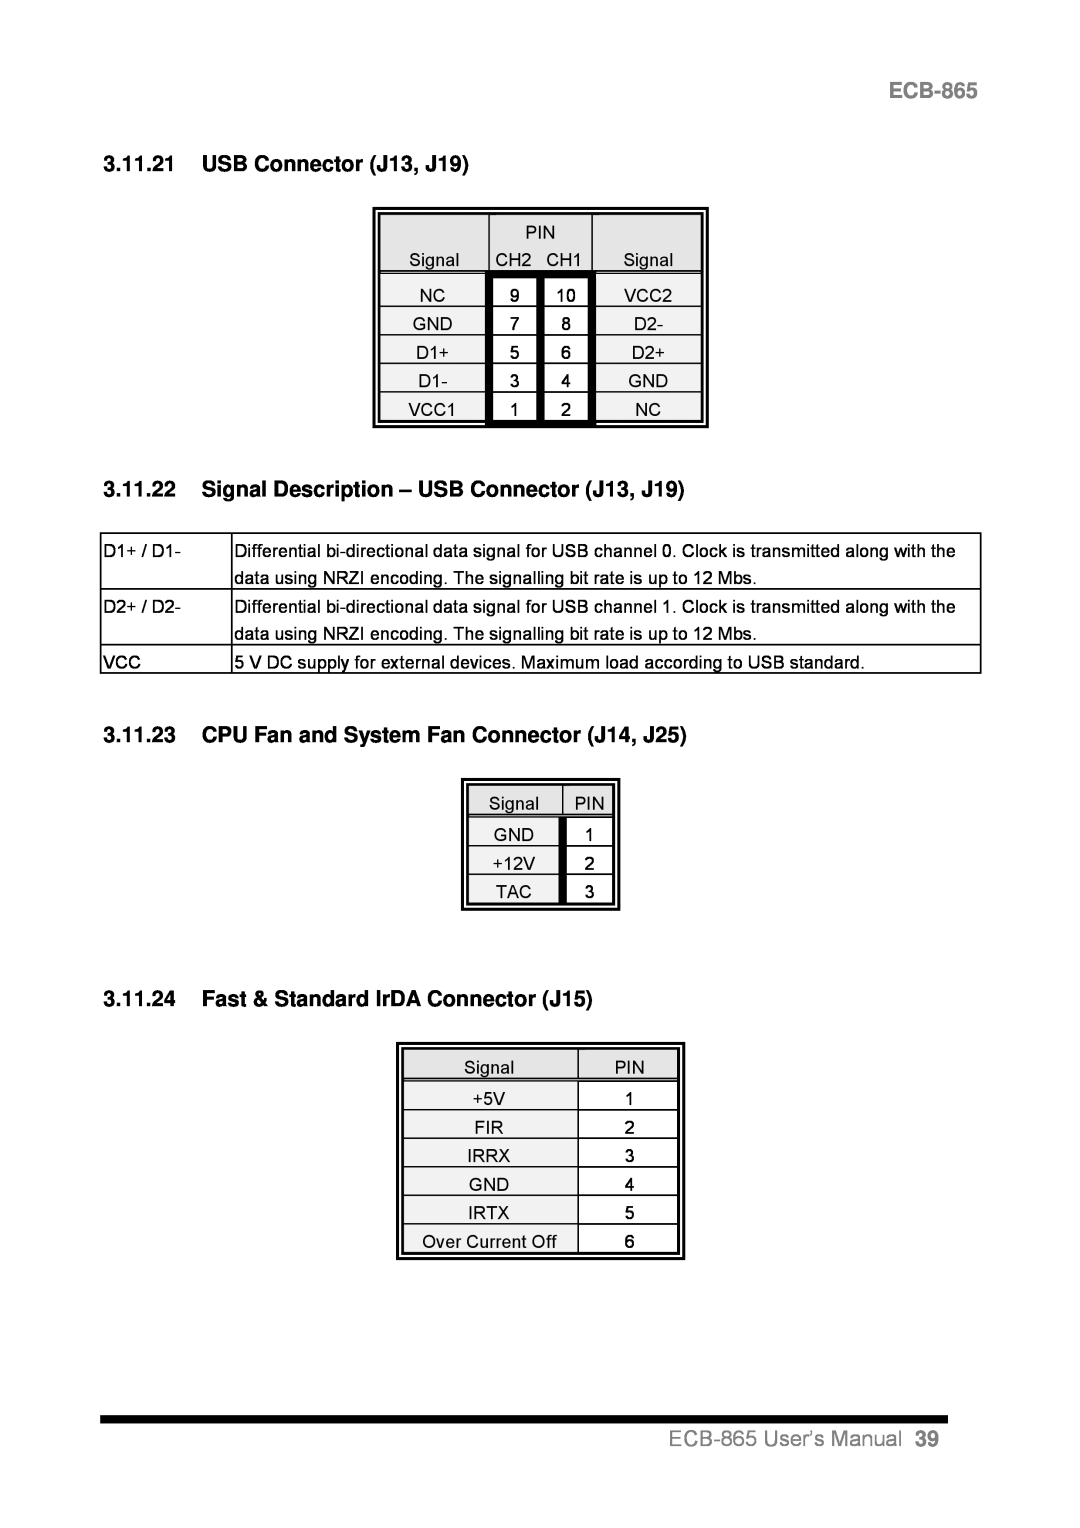 Intel user manual 3.11.21USB Connector J13, J19, 3.11.23CPU Fan and System Fan Connector J14, J25, ECB-865User’s Manual 